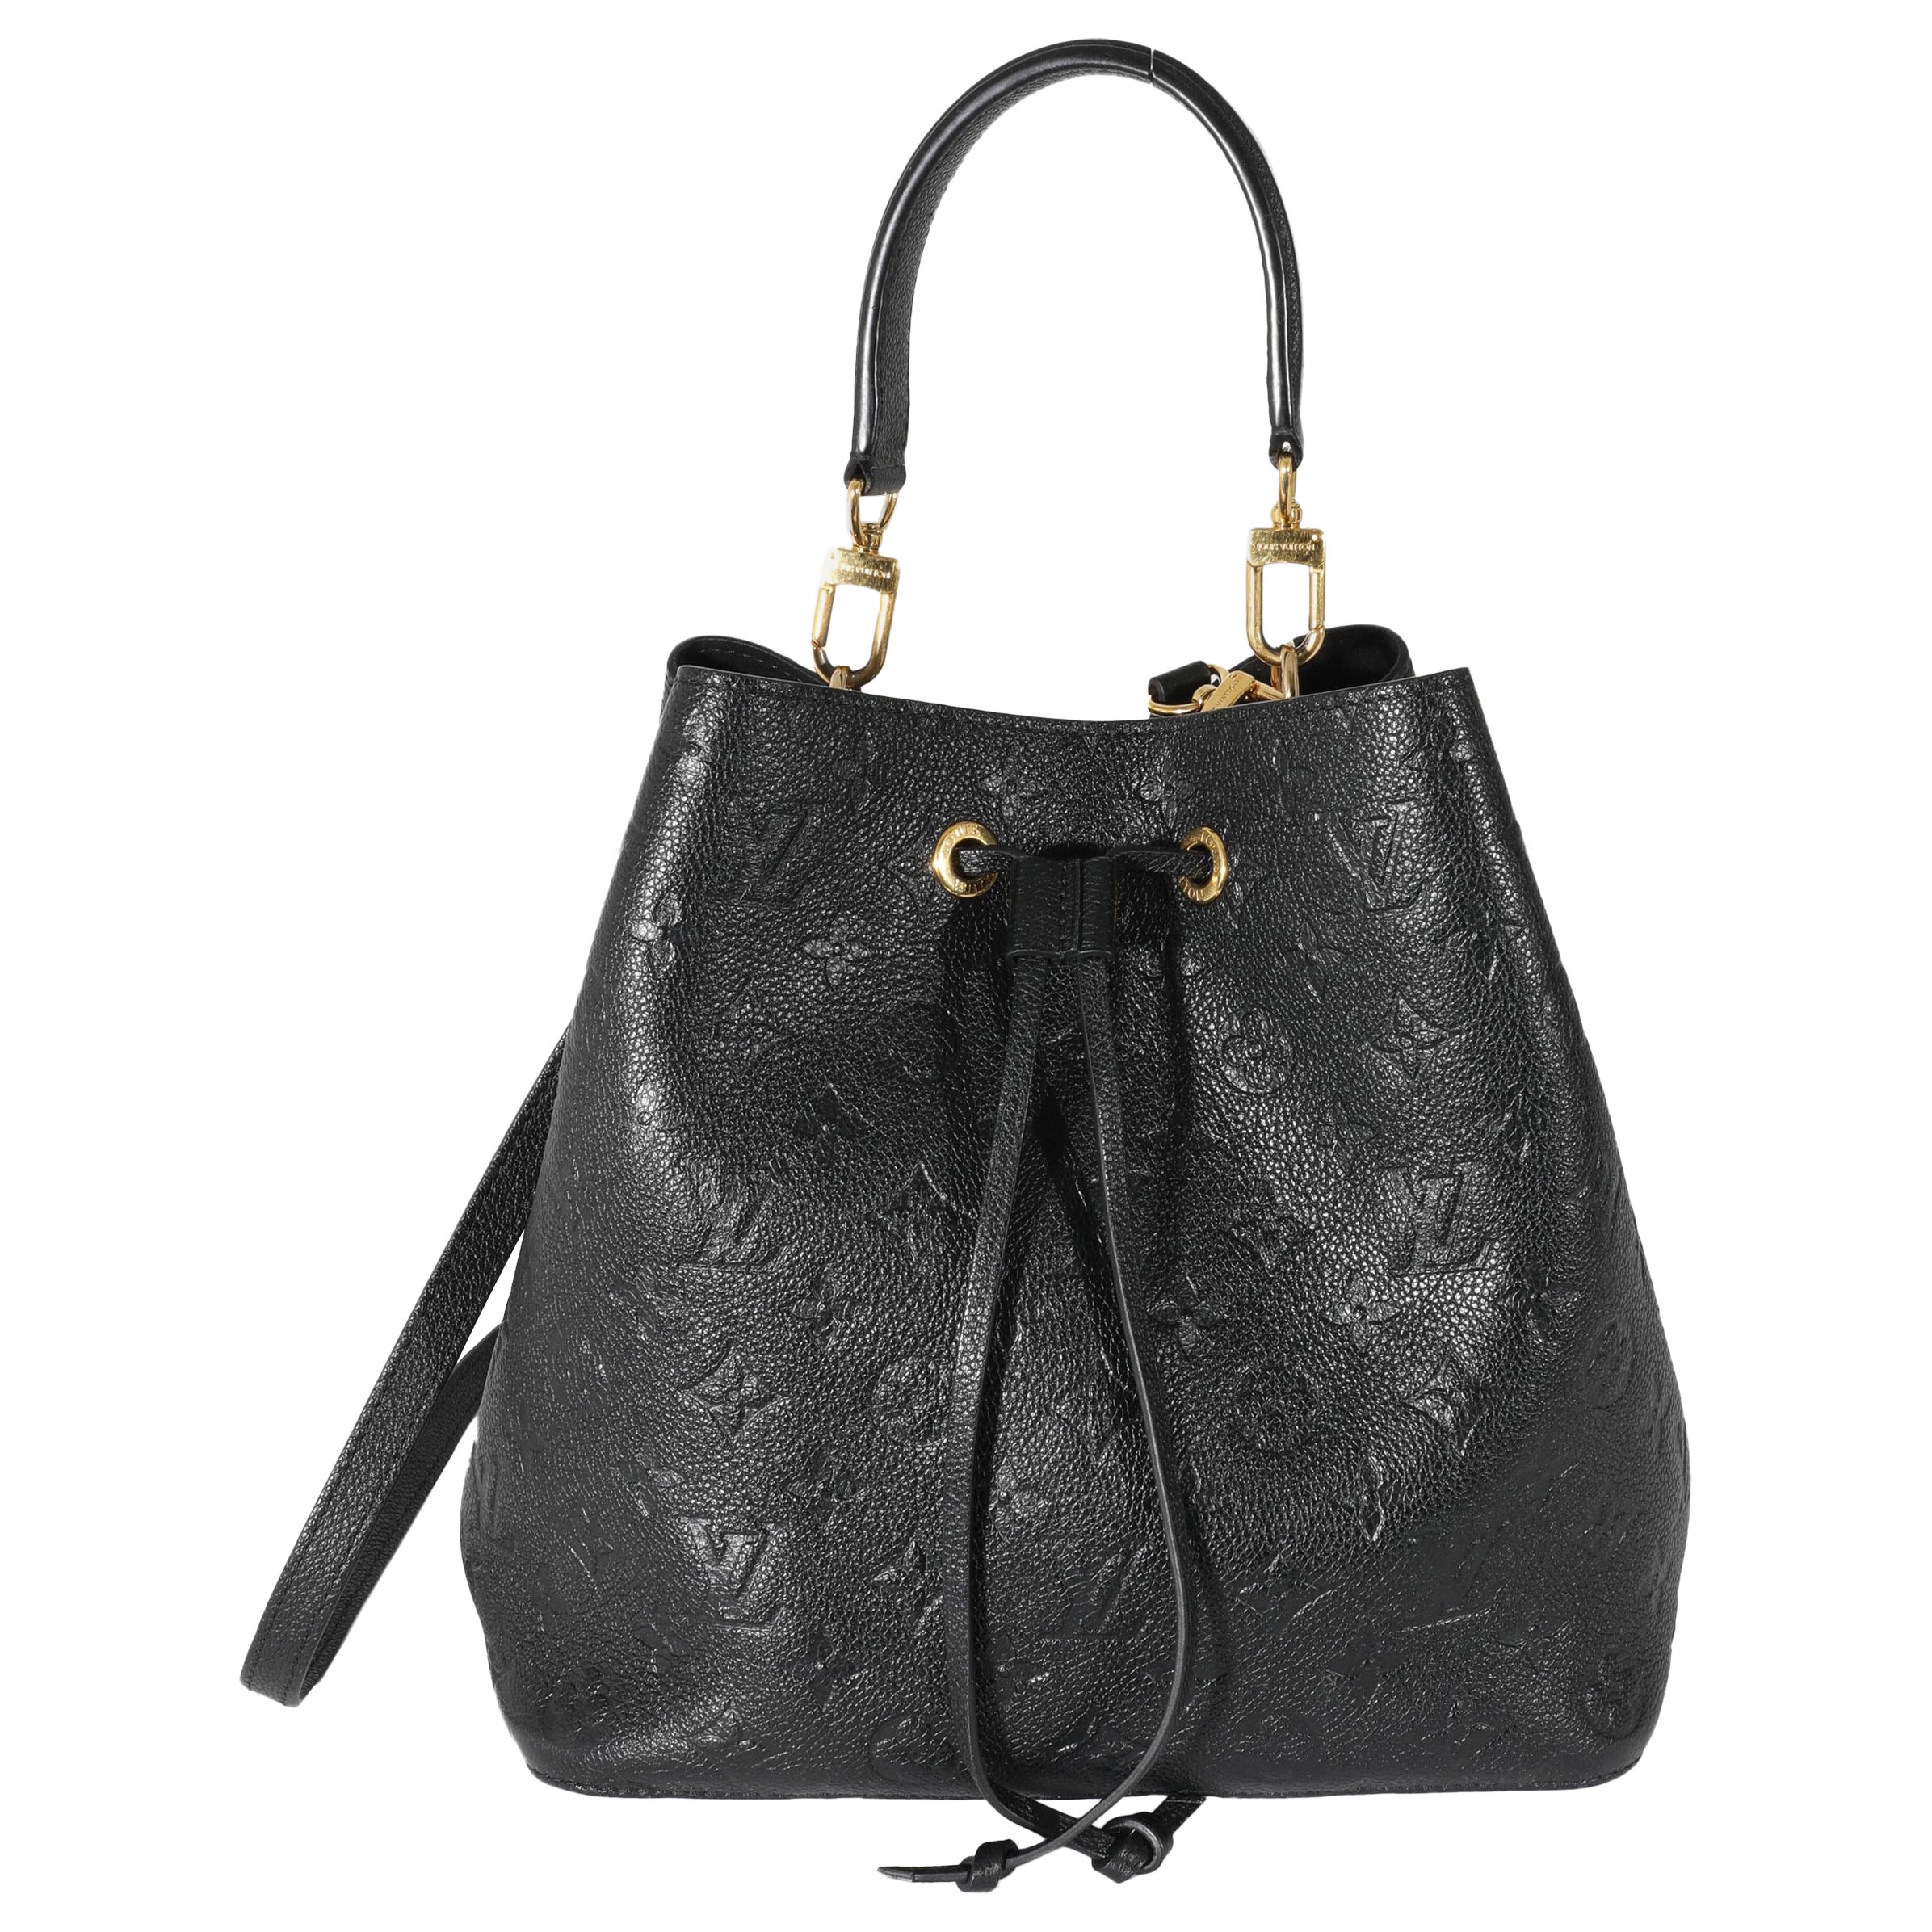 Louis Vuitton MONOGRAM Shoulder bag 3WAY COLORS black and peach